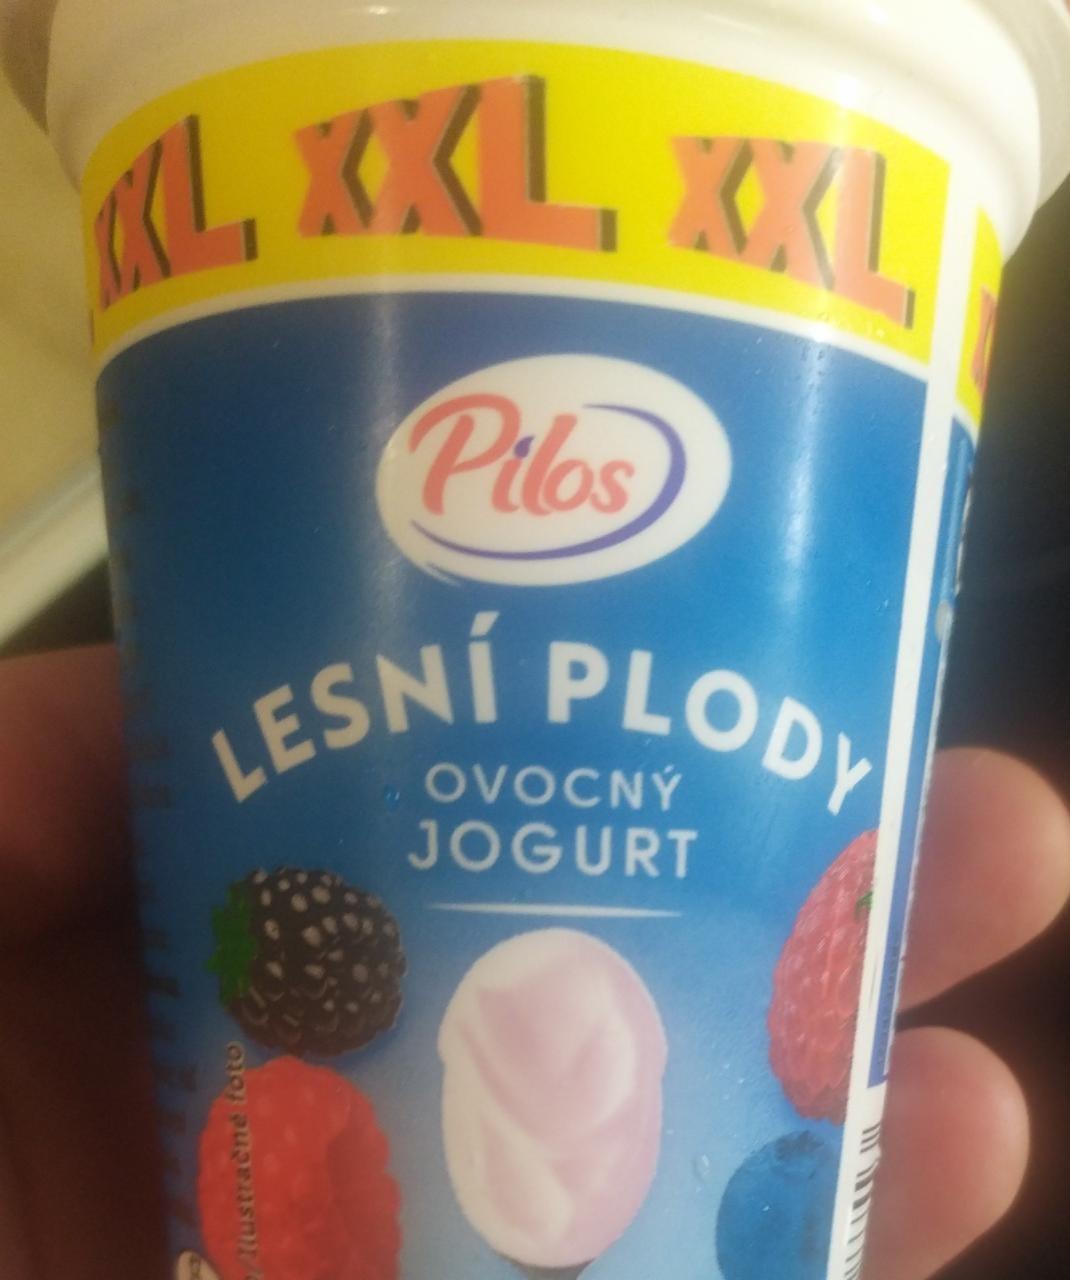 Fotografie - Lesní plody Ovocný jogurt Pilos